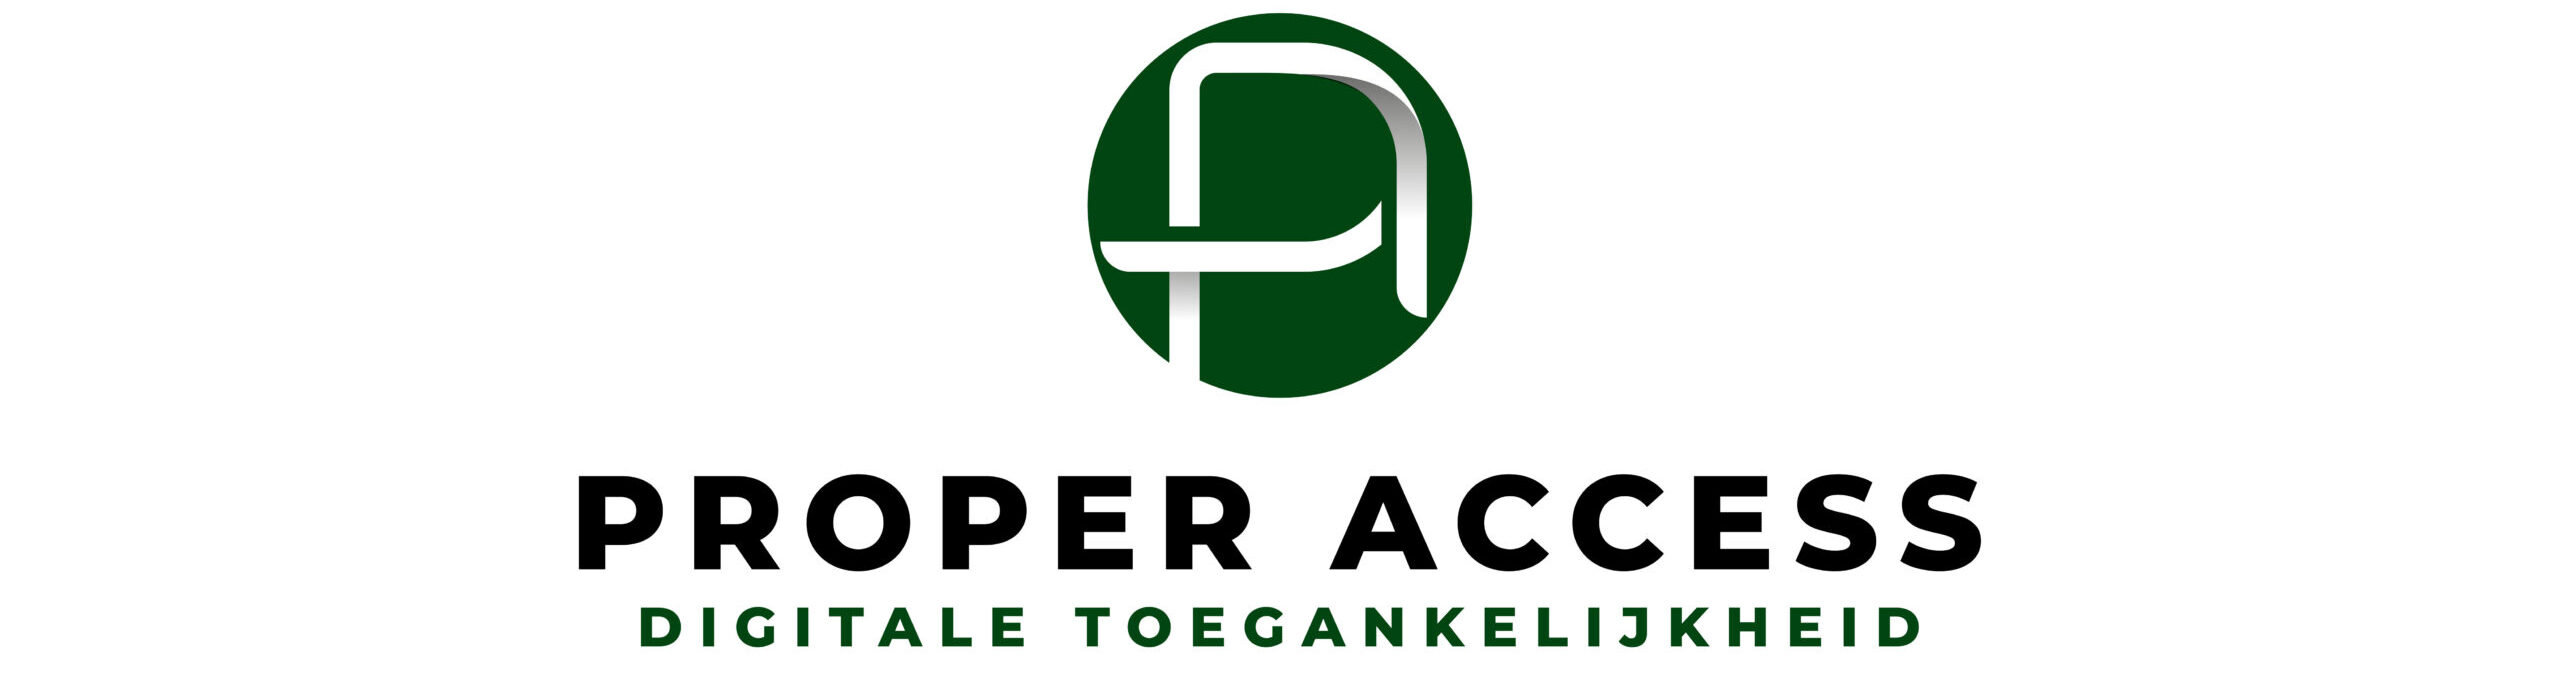 Logo Proper Access - digitale toegankelijkheid